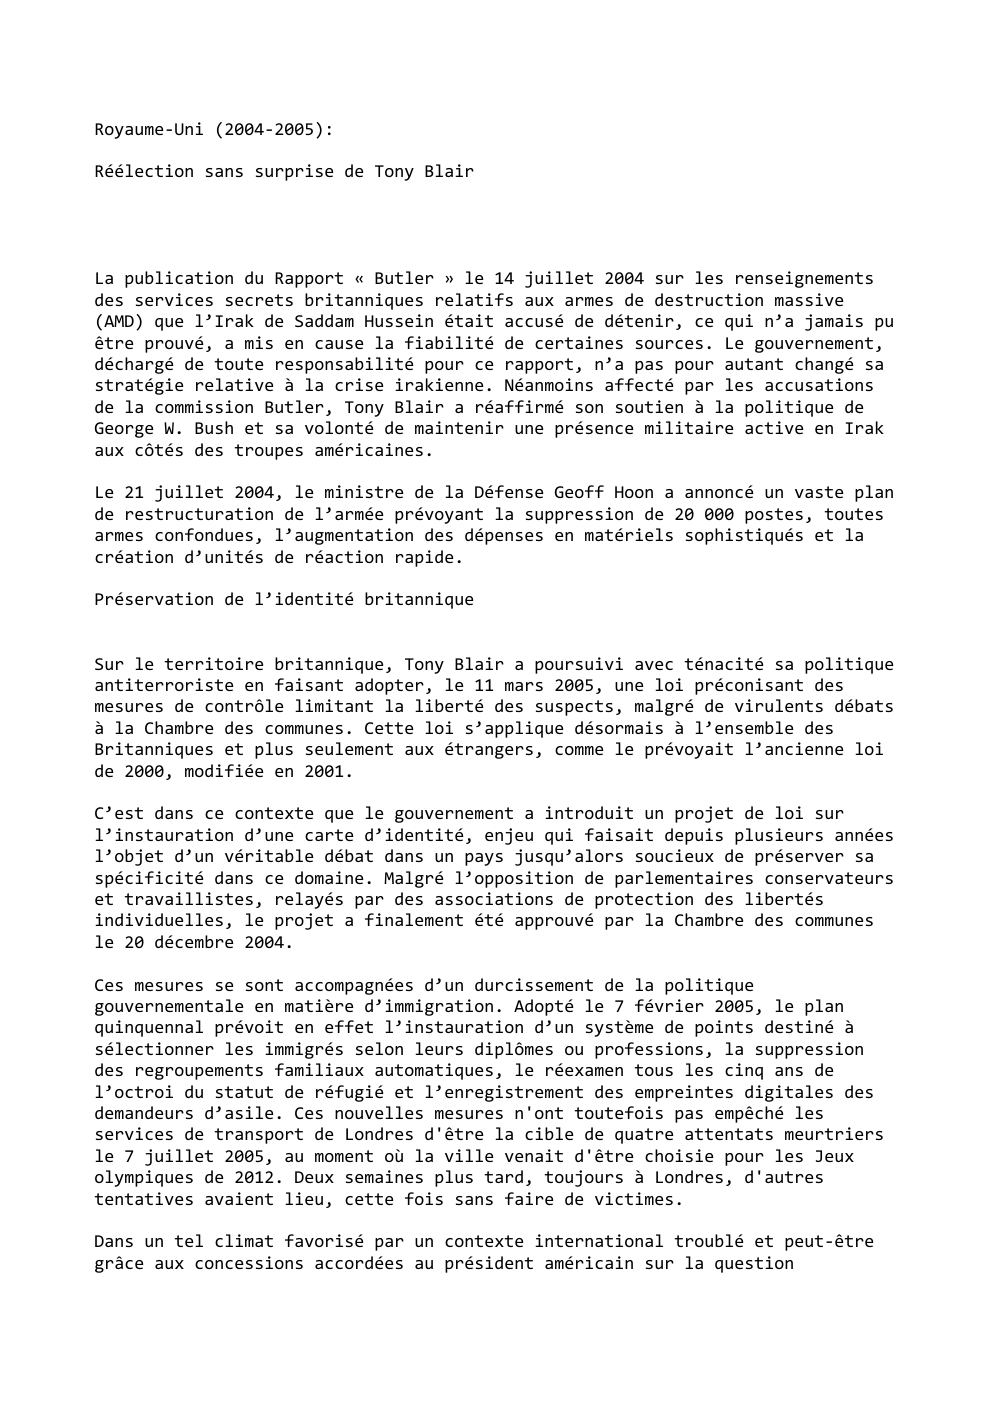 Prévisualisation du document Royaume-Uni (2004-2005):
Réélection sans surprise de Tony Blair

La publication du Rapport « Butler » le 14 juillet 2004 sur...